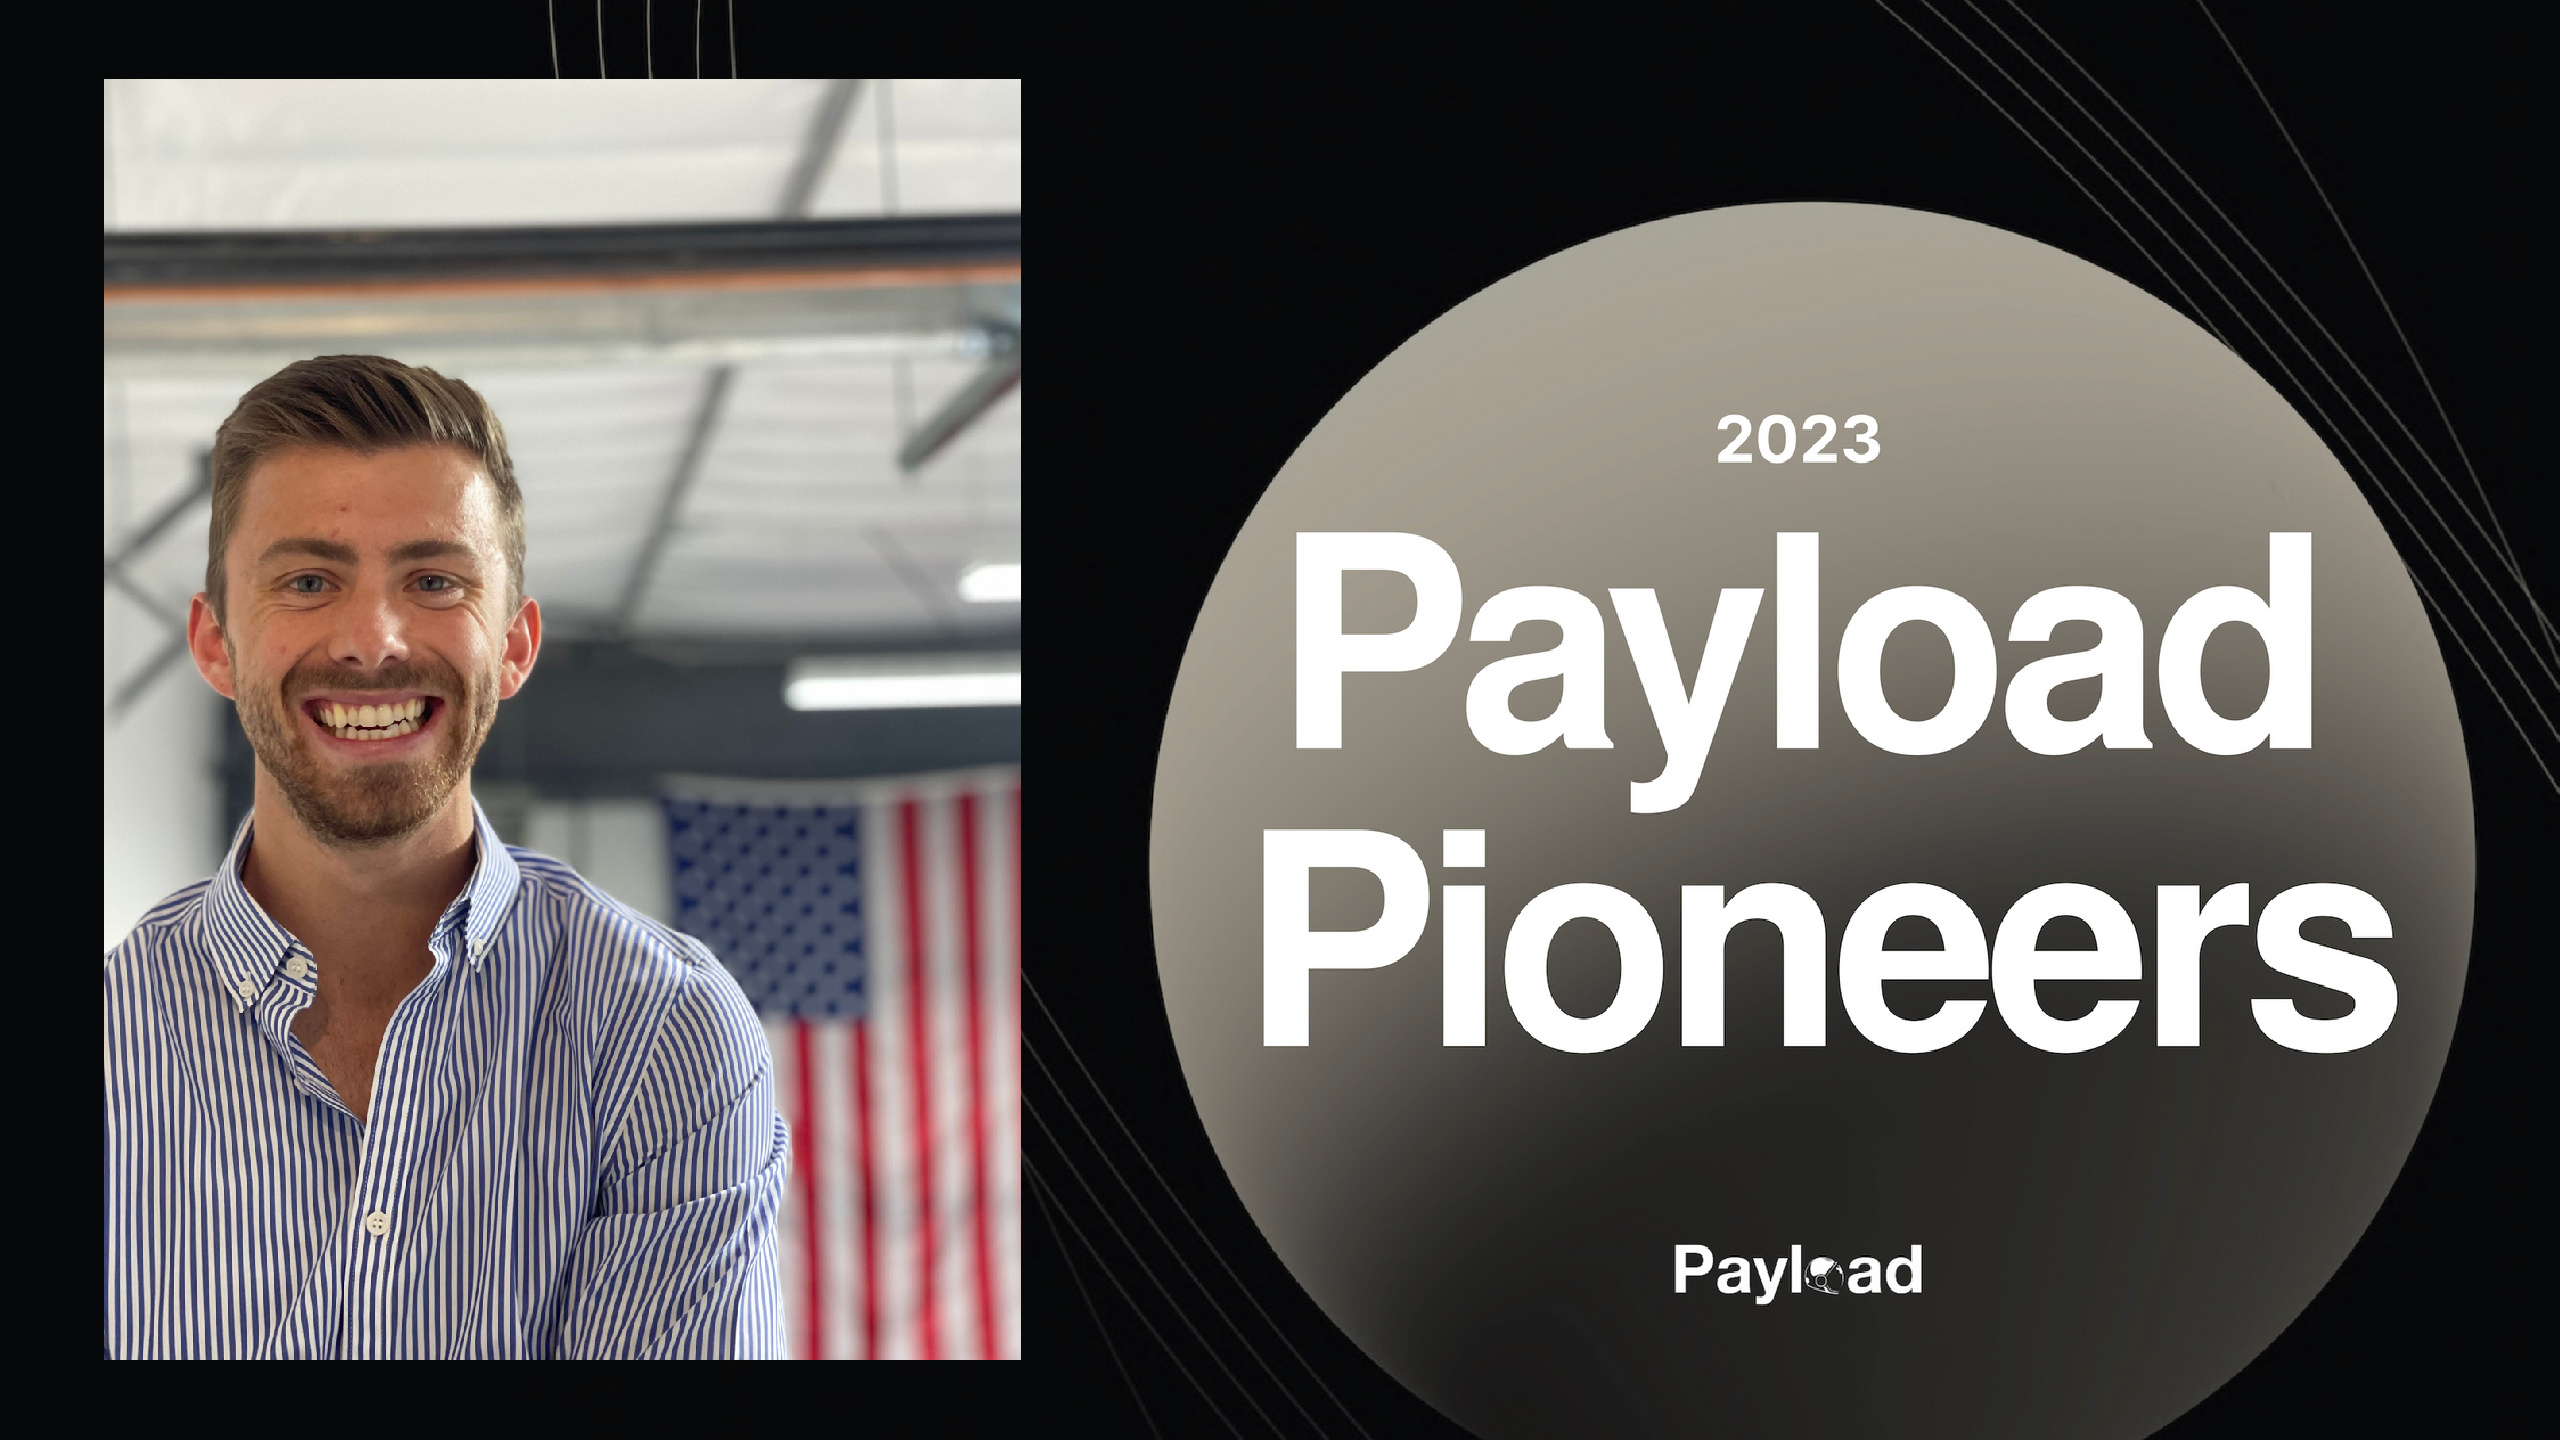 Payload Pioneers 2023: Van Wagner